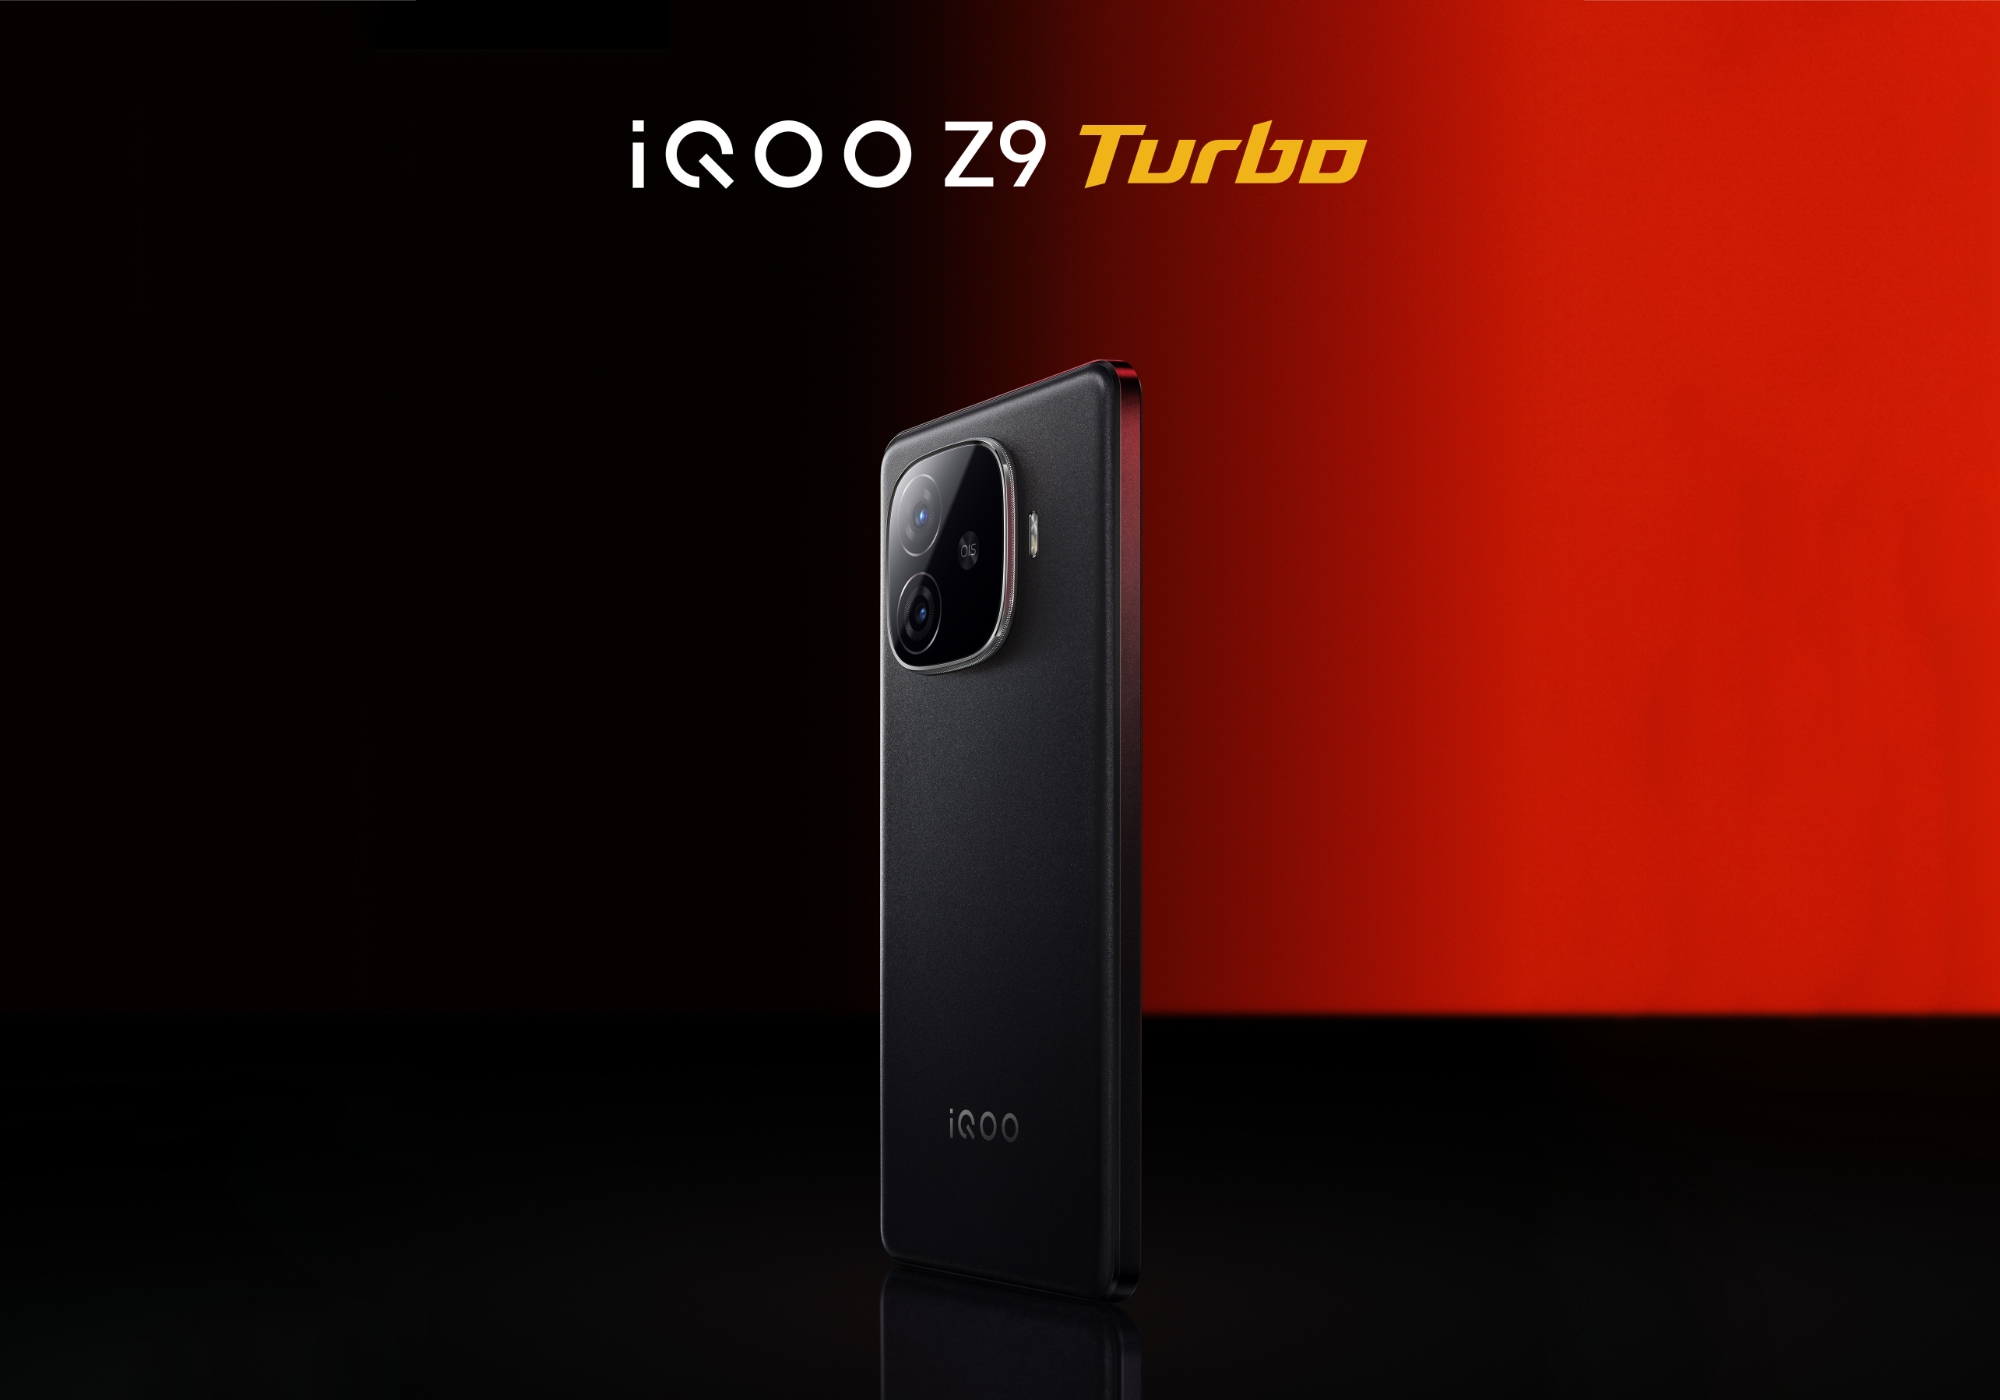 Senza aspettare la presentazione: vivo ha rivelato l'aspetto di iQOO Z9 Turbo